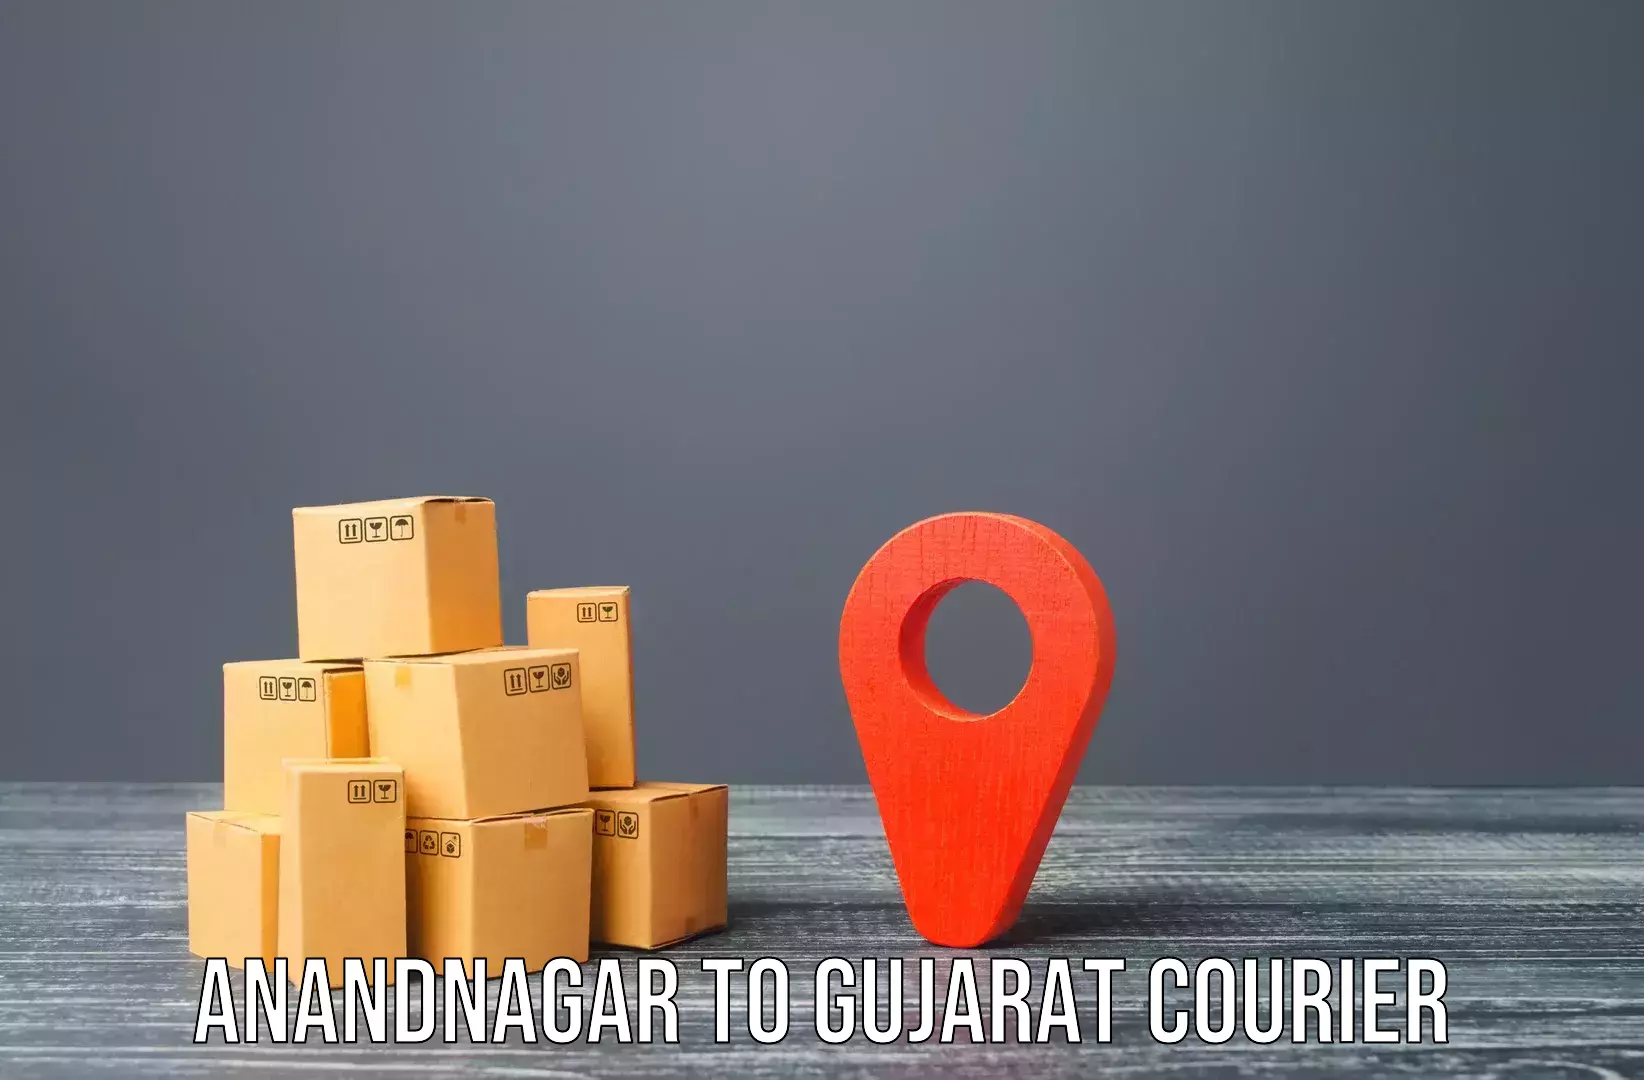 Residential moving experts Anandnagar to IIT Gandhi Nagar